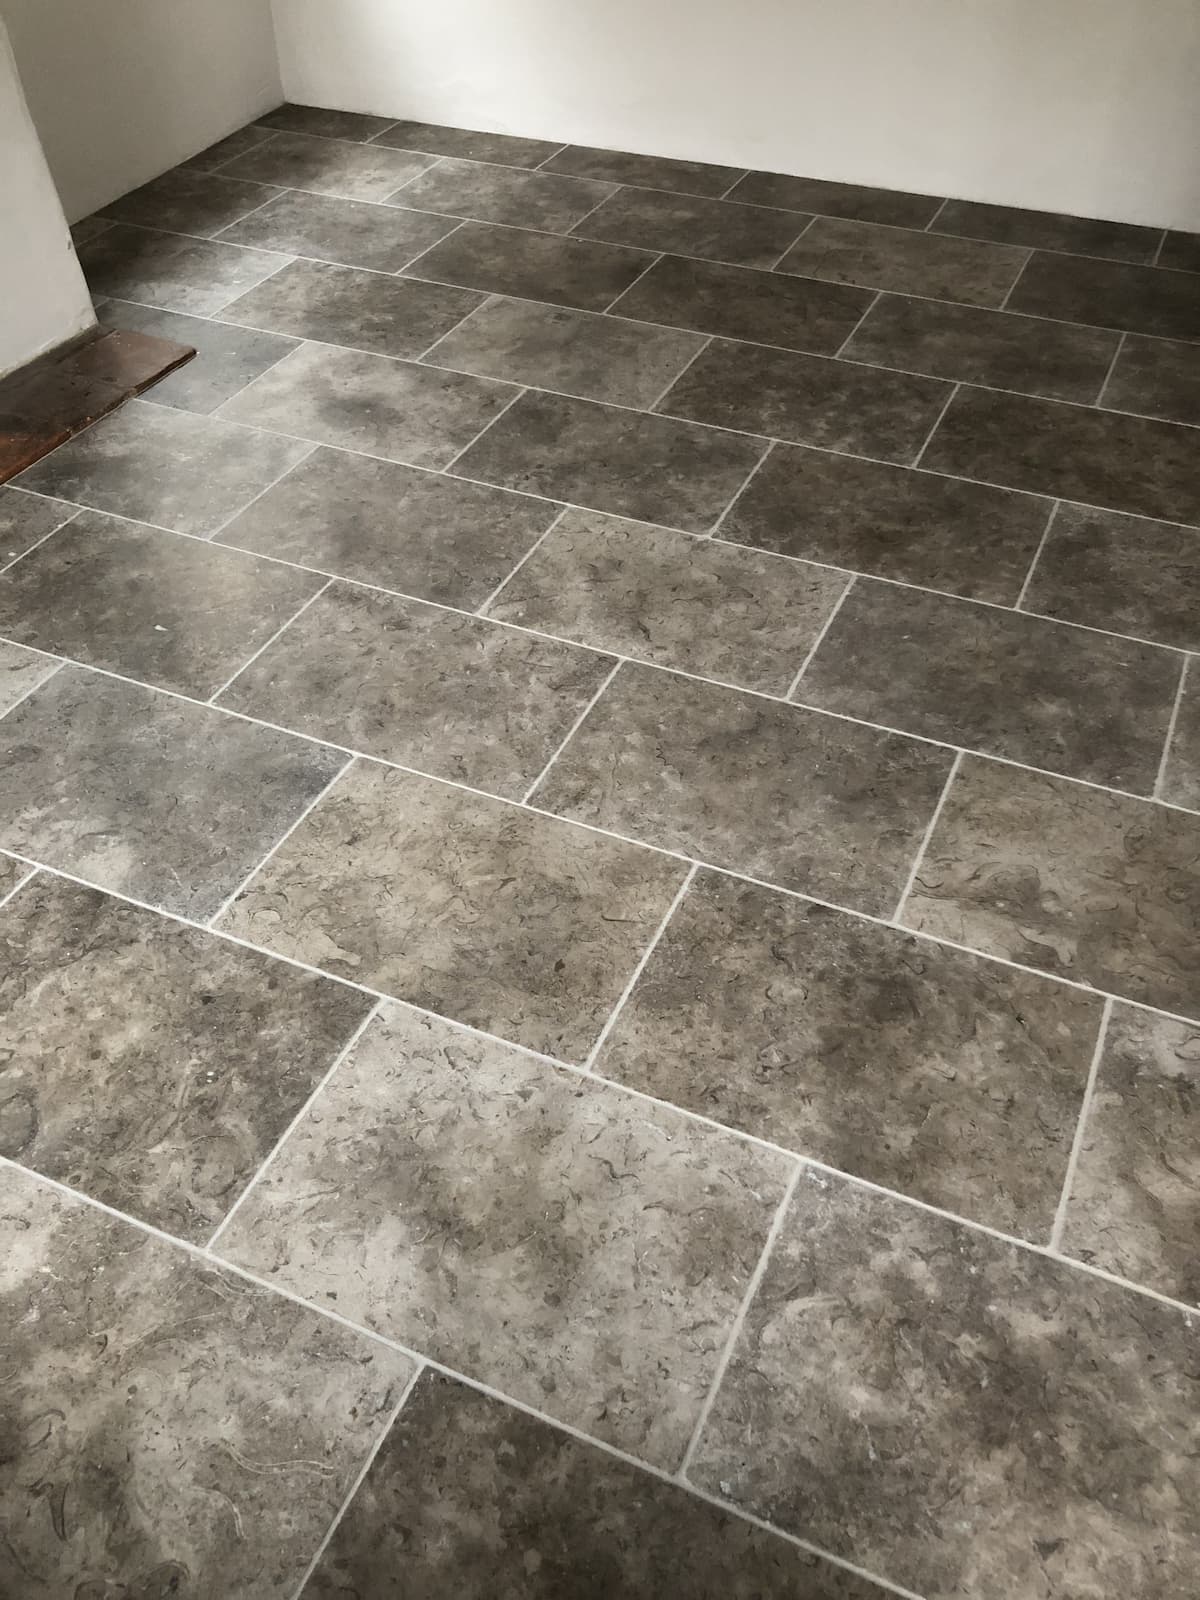 limestone floor tiling laid by aylsham based tiler